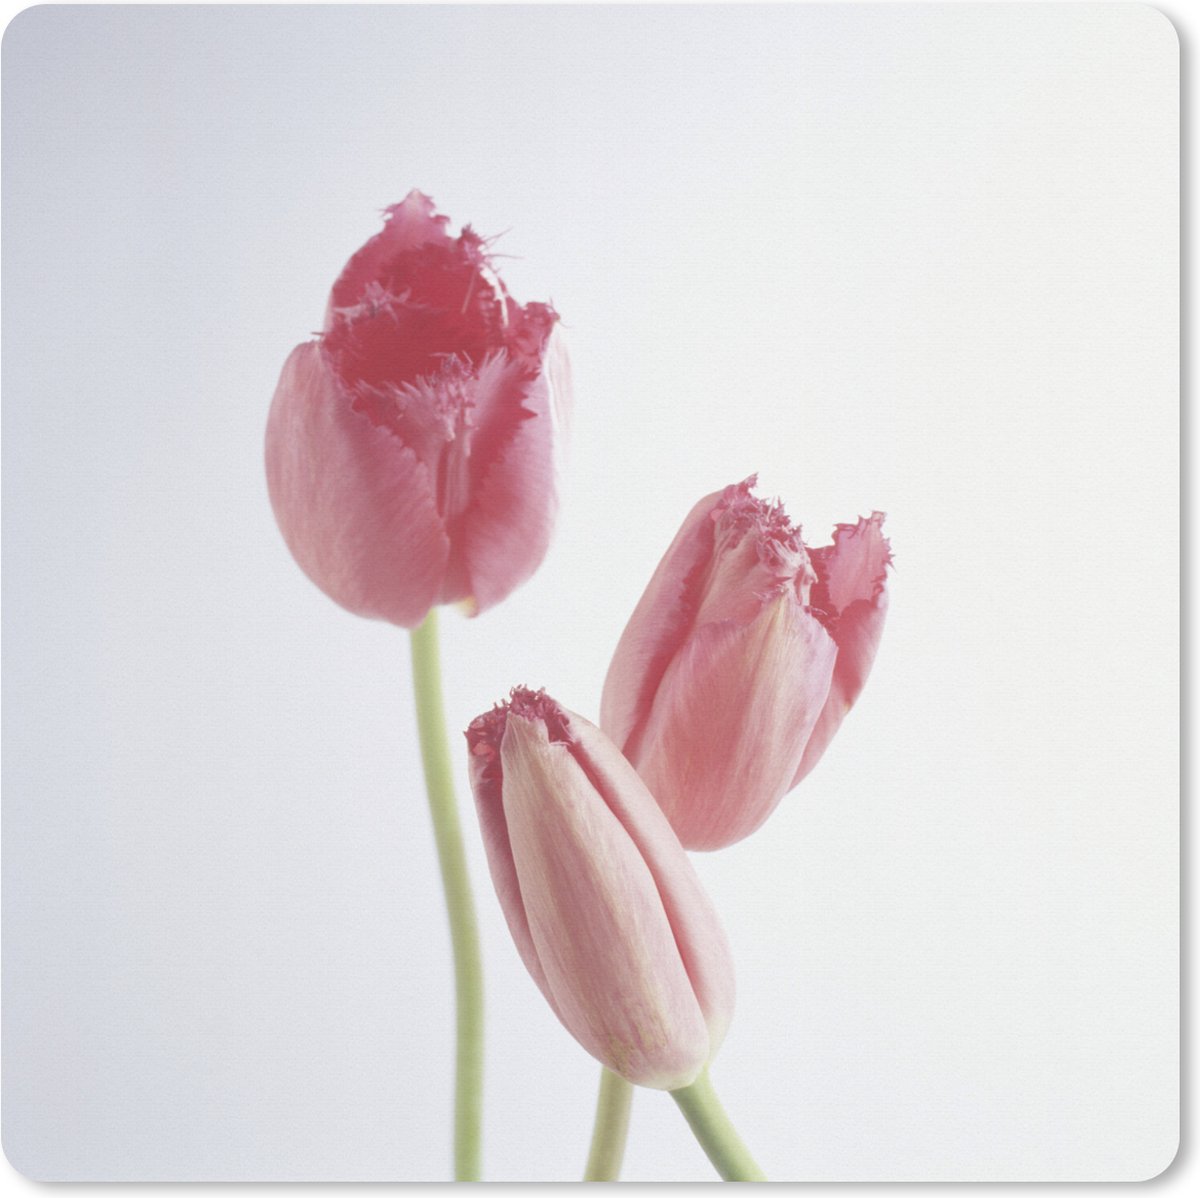 Muismat XXL - Bureau onderlegger - Bureau mat - Drie roze tulpen - 50x50 cm - XXL muismat